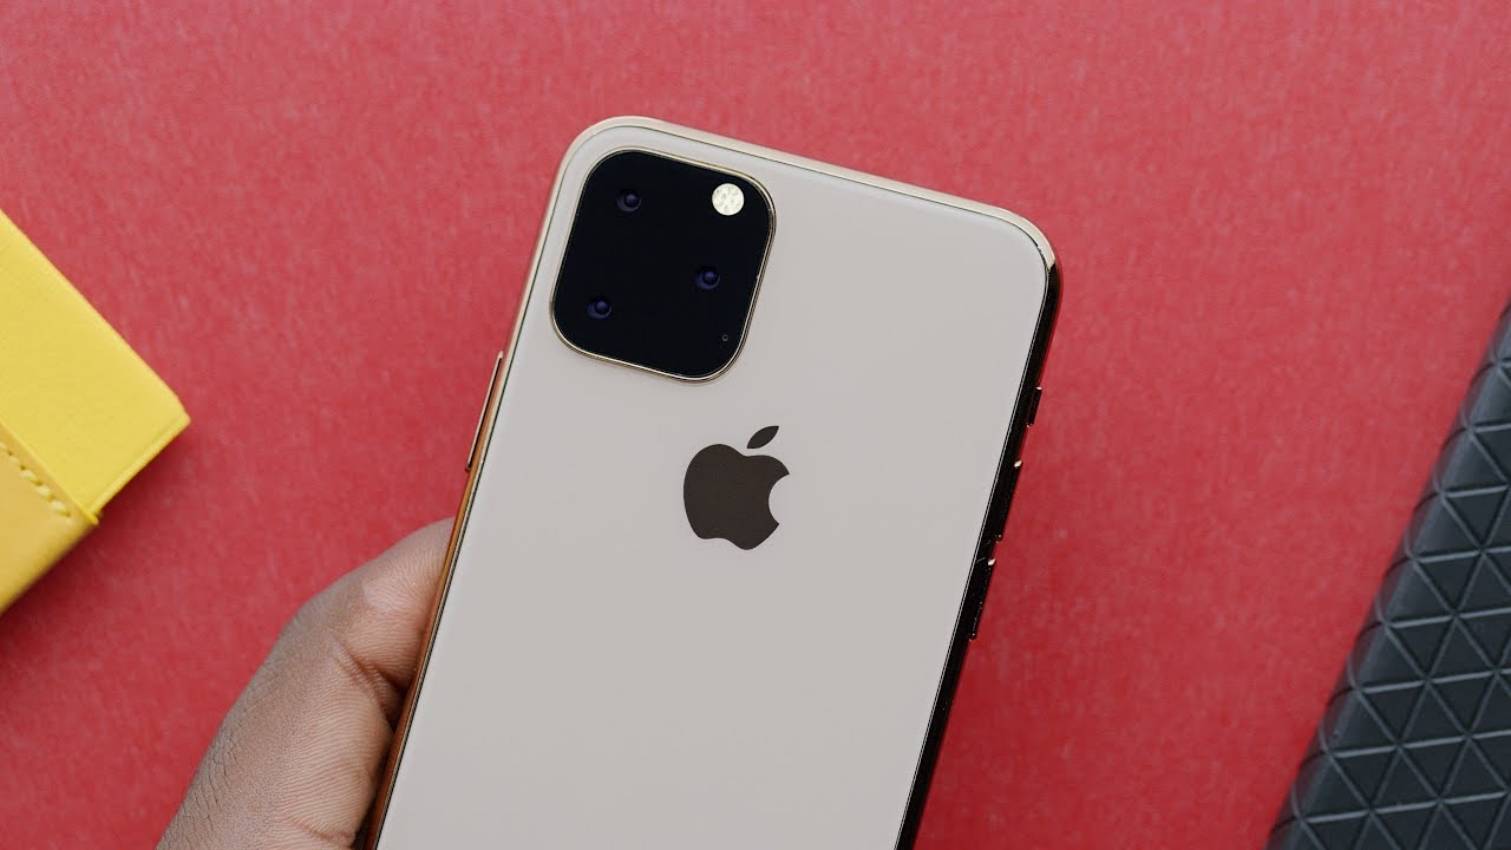 Pourquoi le logo Apple de l'iPhone 11 est-il repositionné dans l'étui